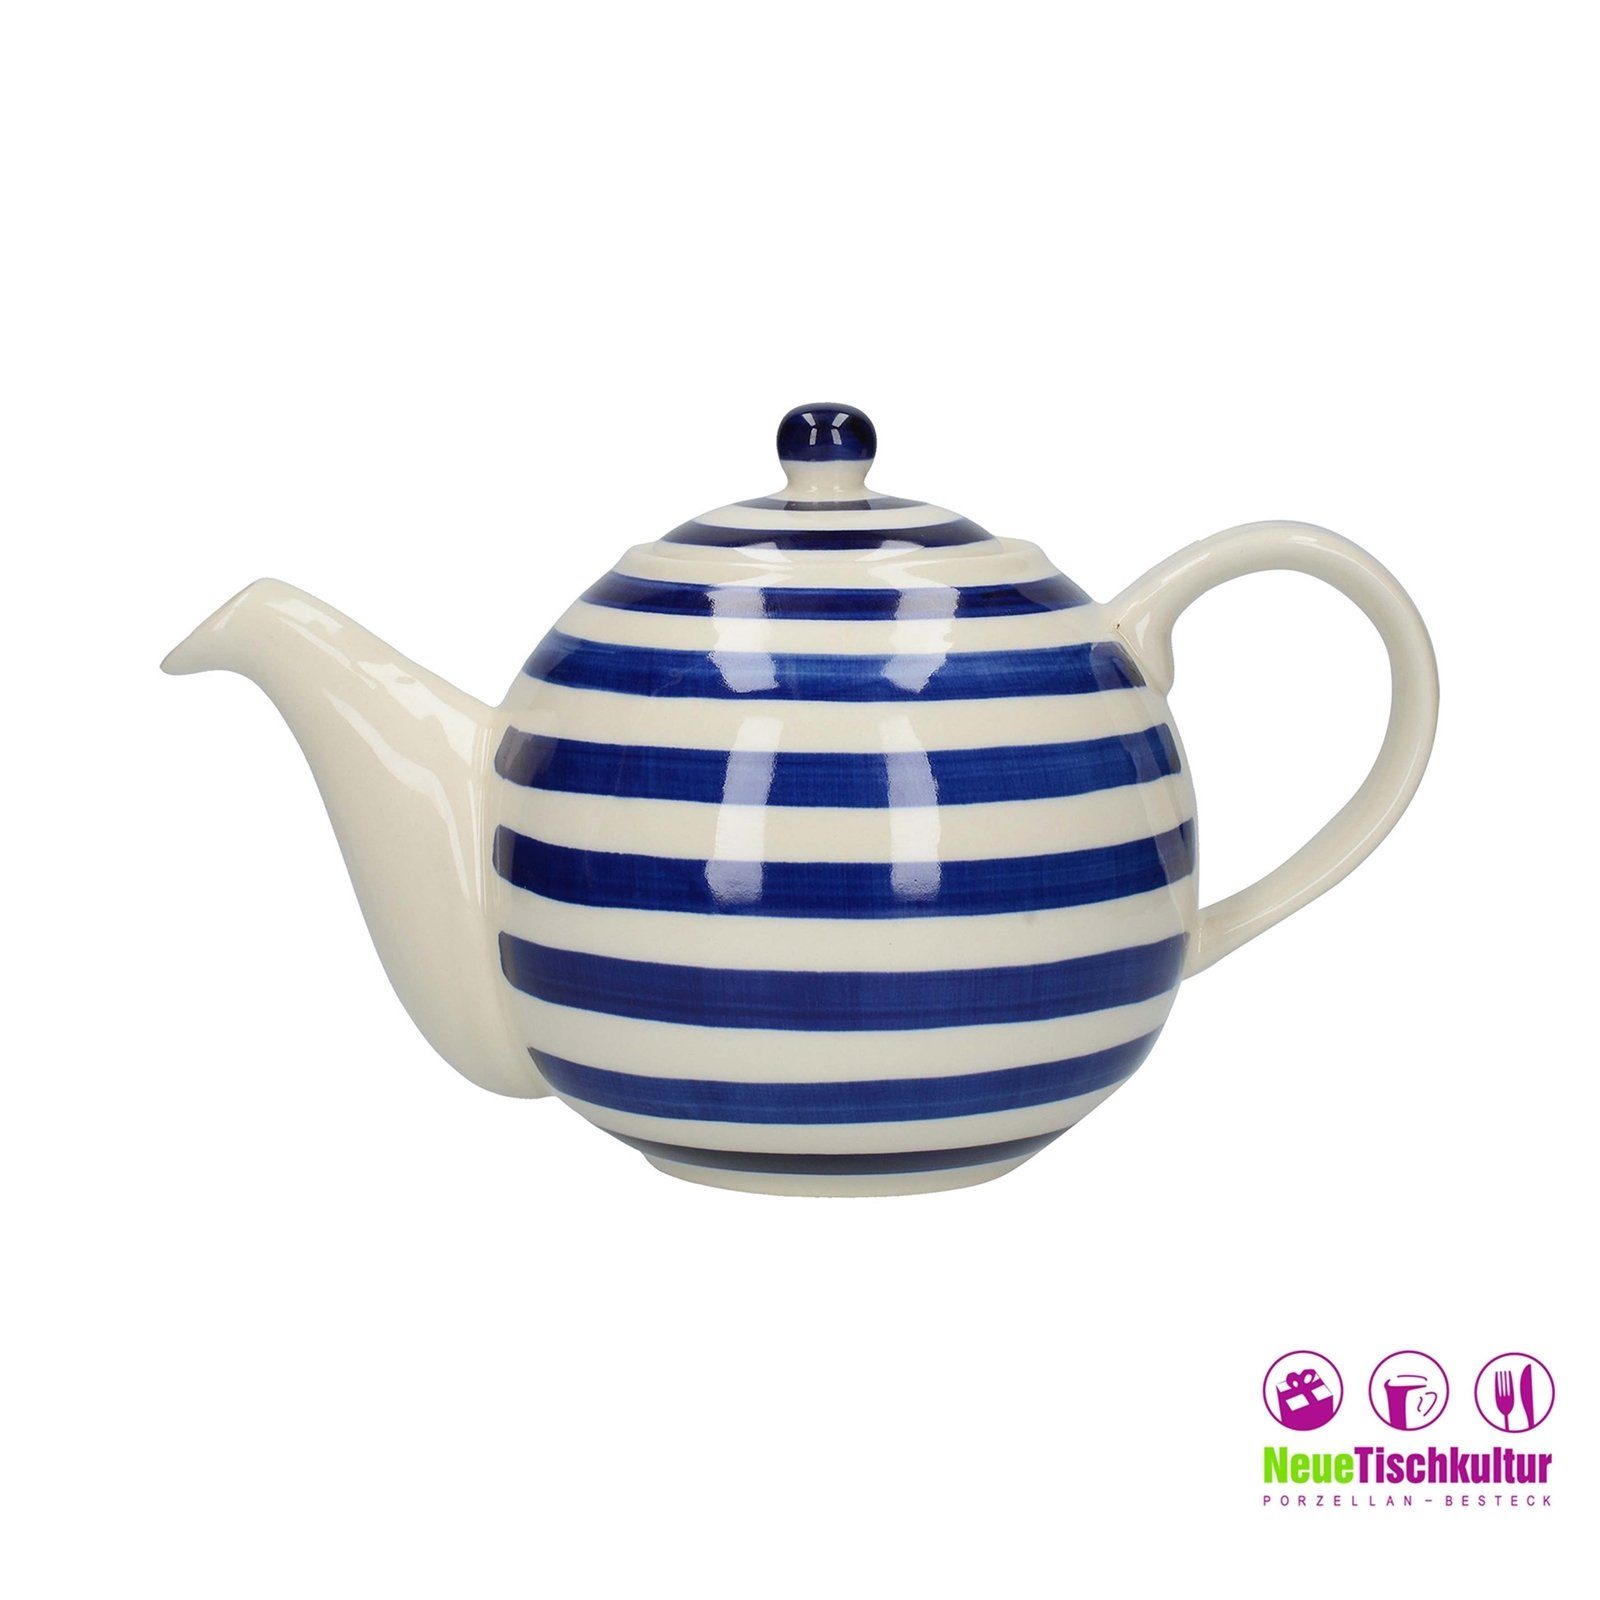 Neuetischkultur Teekanne »Teekanne Keramik, für 4 Tassen, Blau-Weiß«, 0.9 l  online kaufen | OTTO